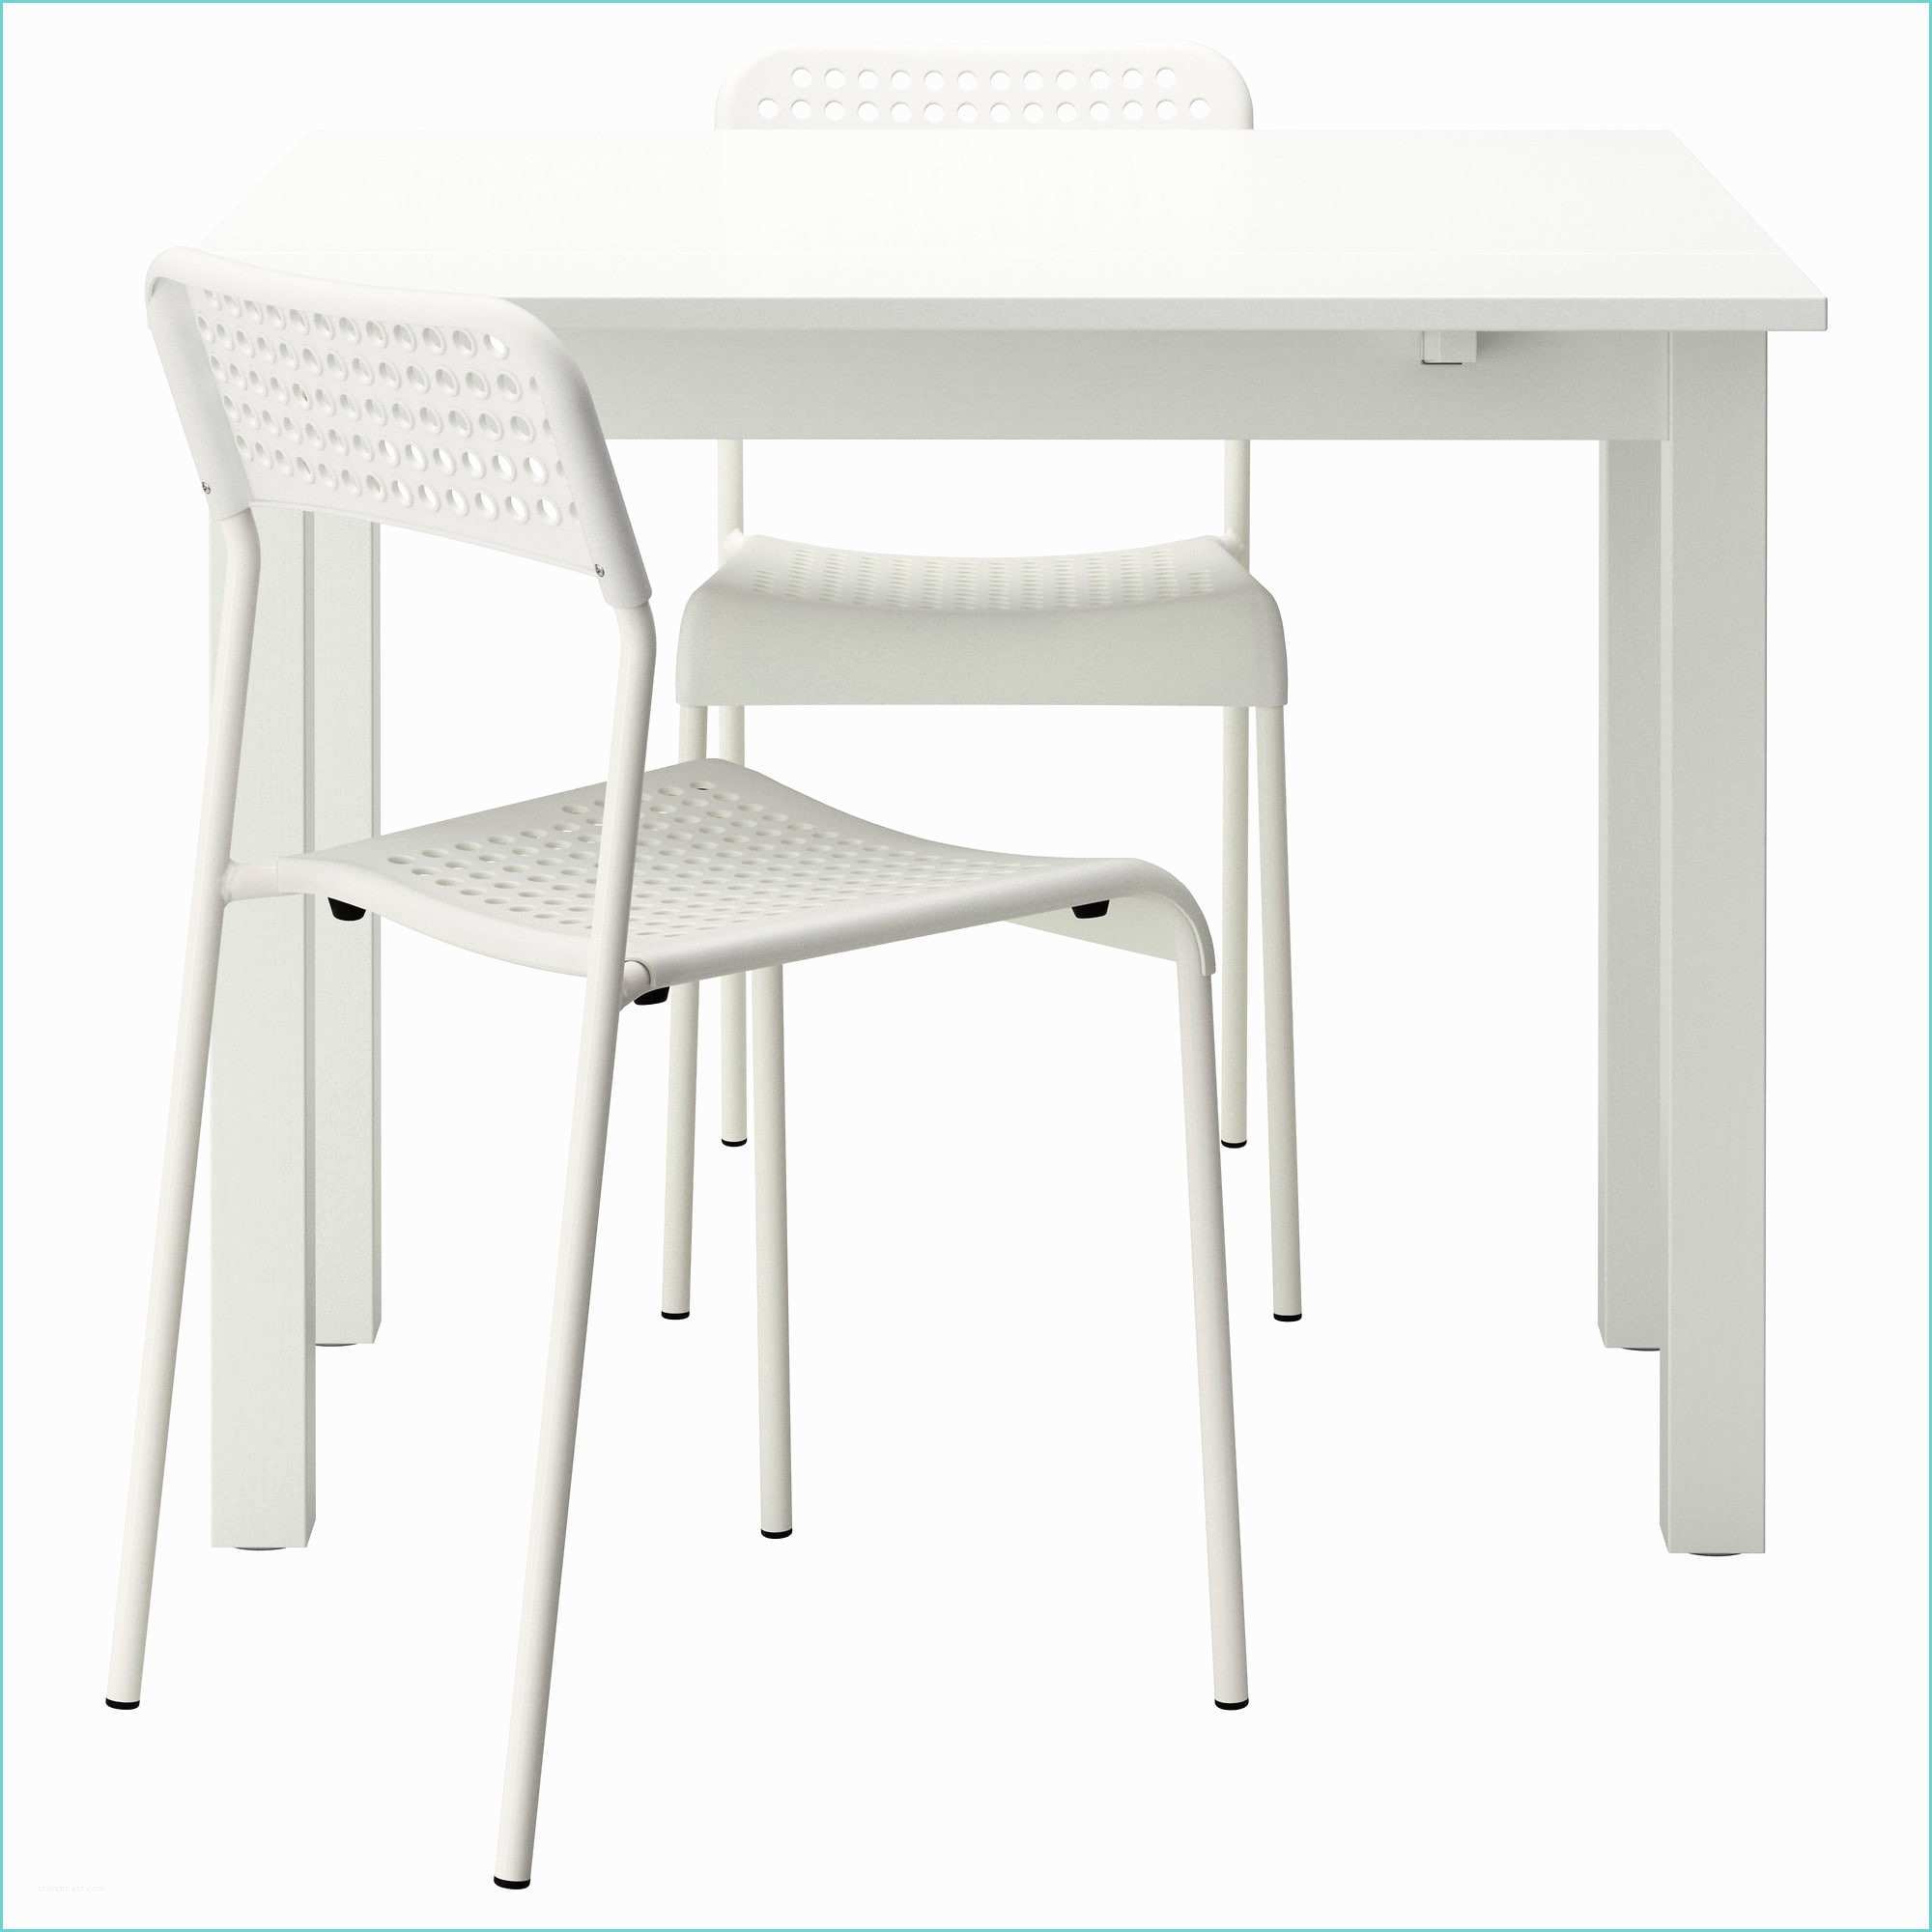 Table De Cuisine Ikea Table Et Chaise De Cuisine Ikea Table Chaise Cuisine